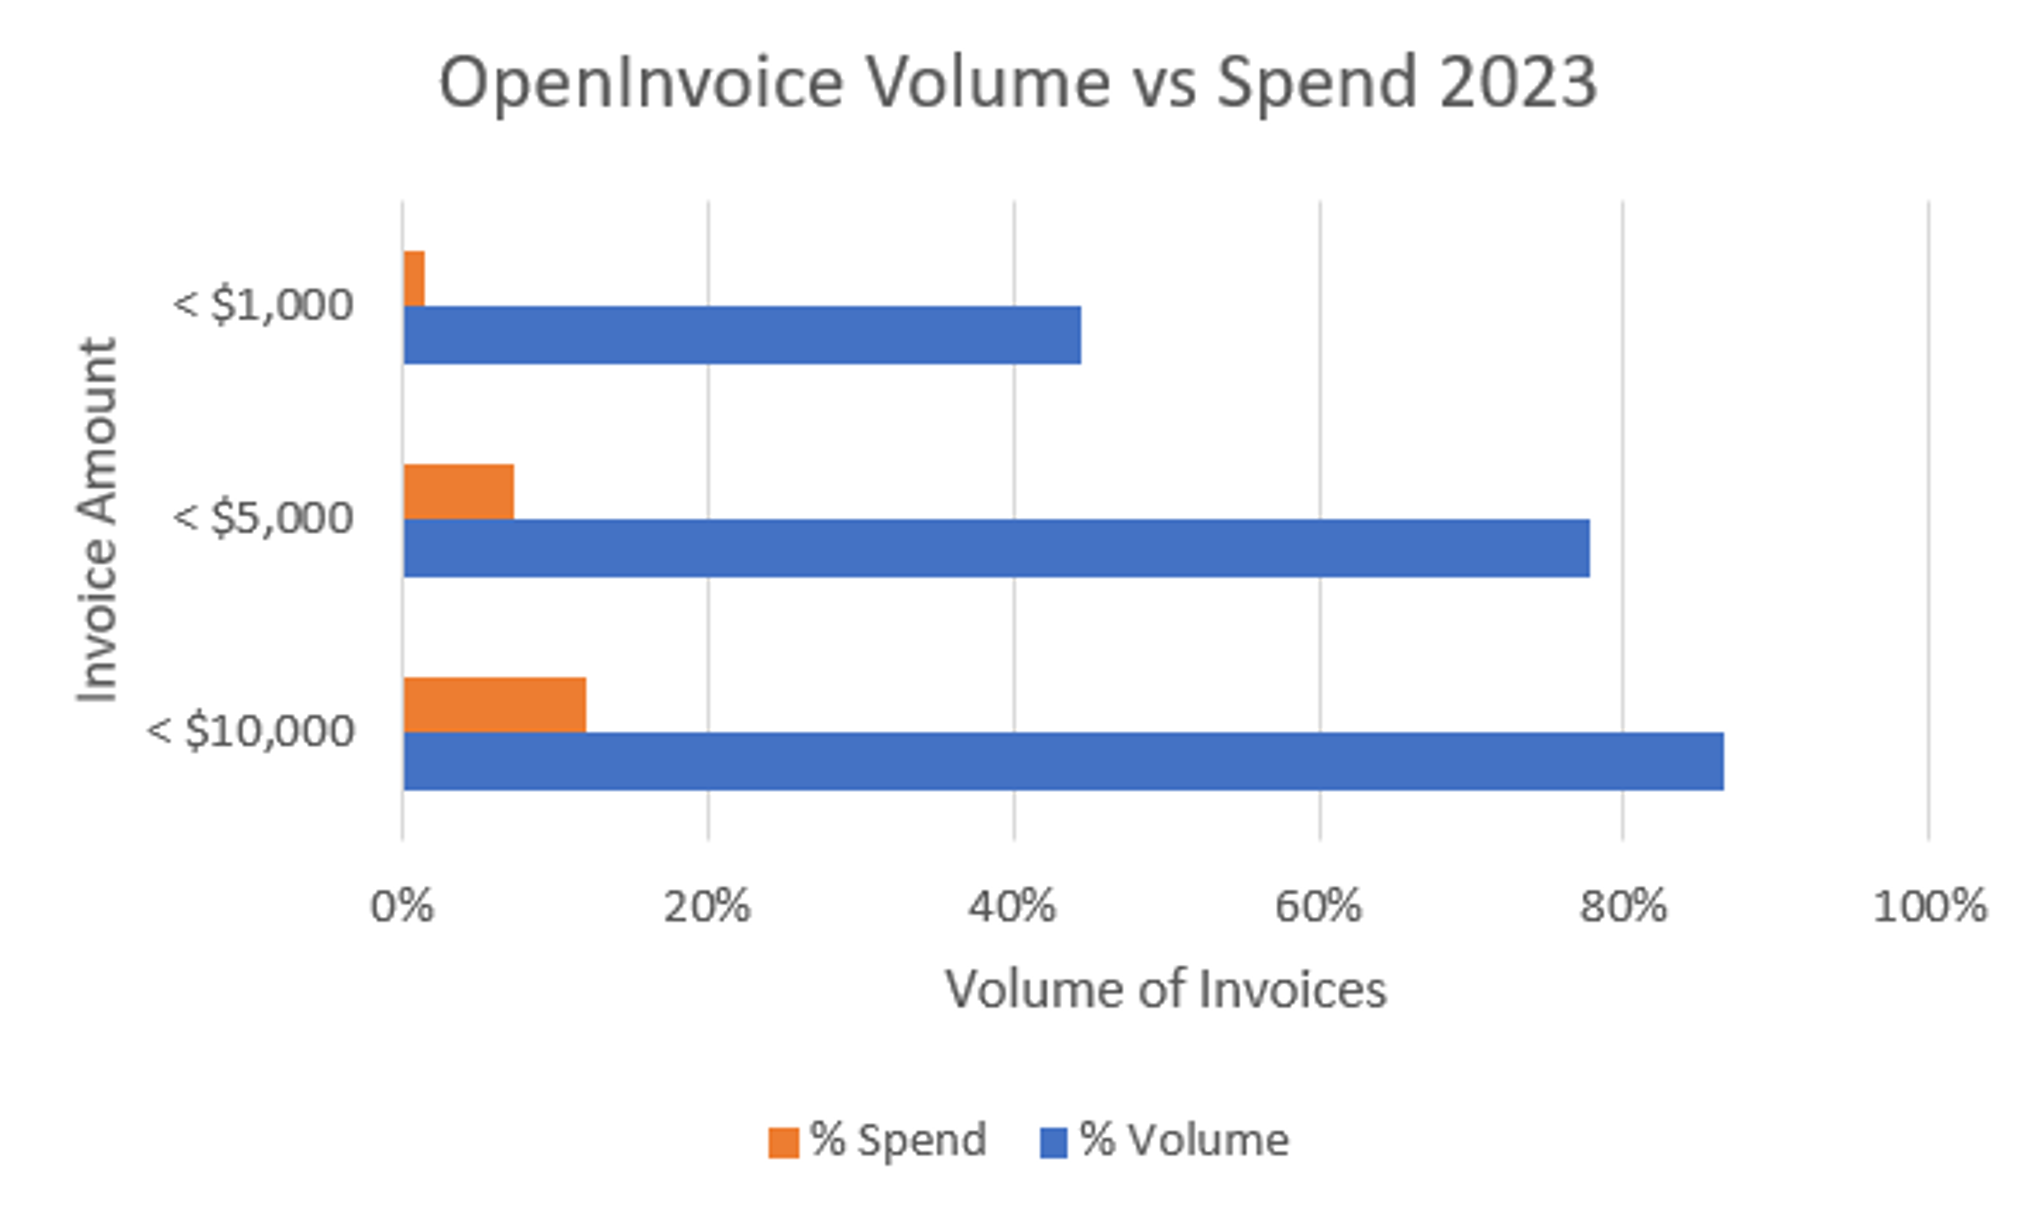 openinvoice-volume-vs-spend-graph